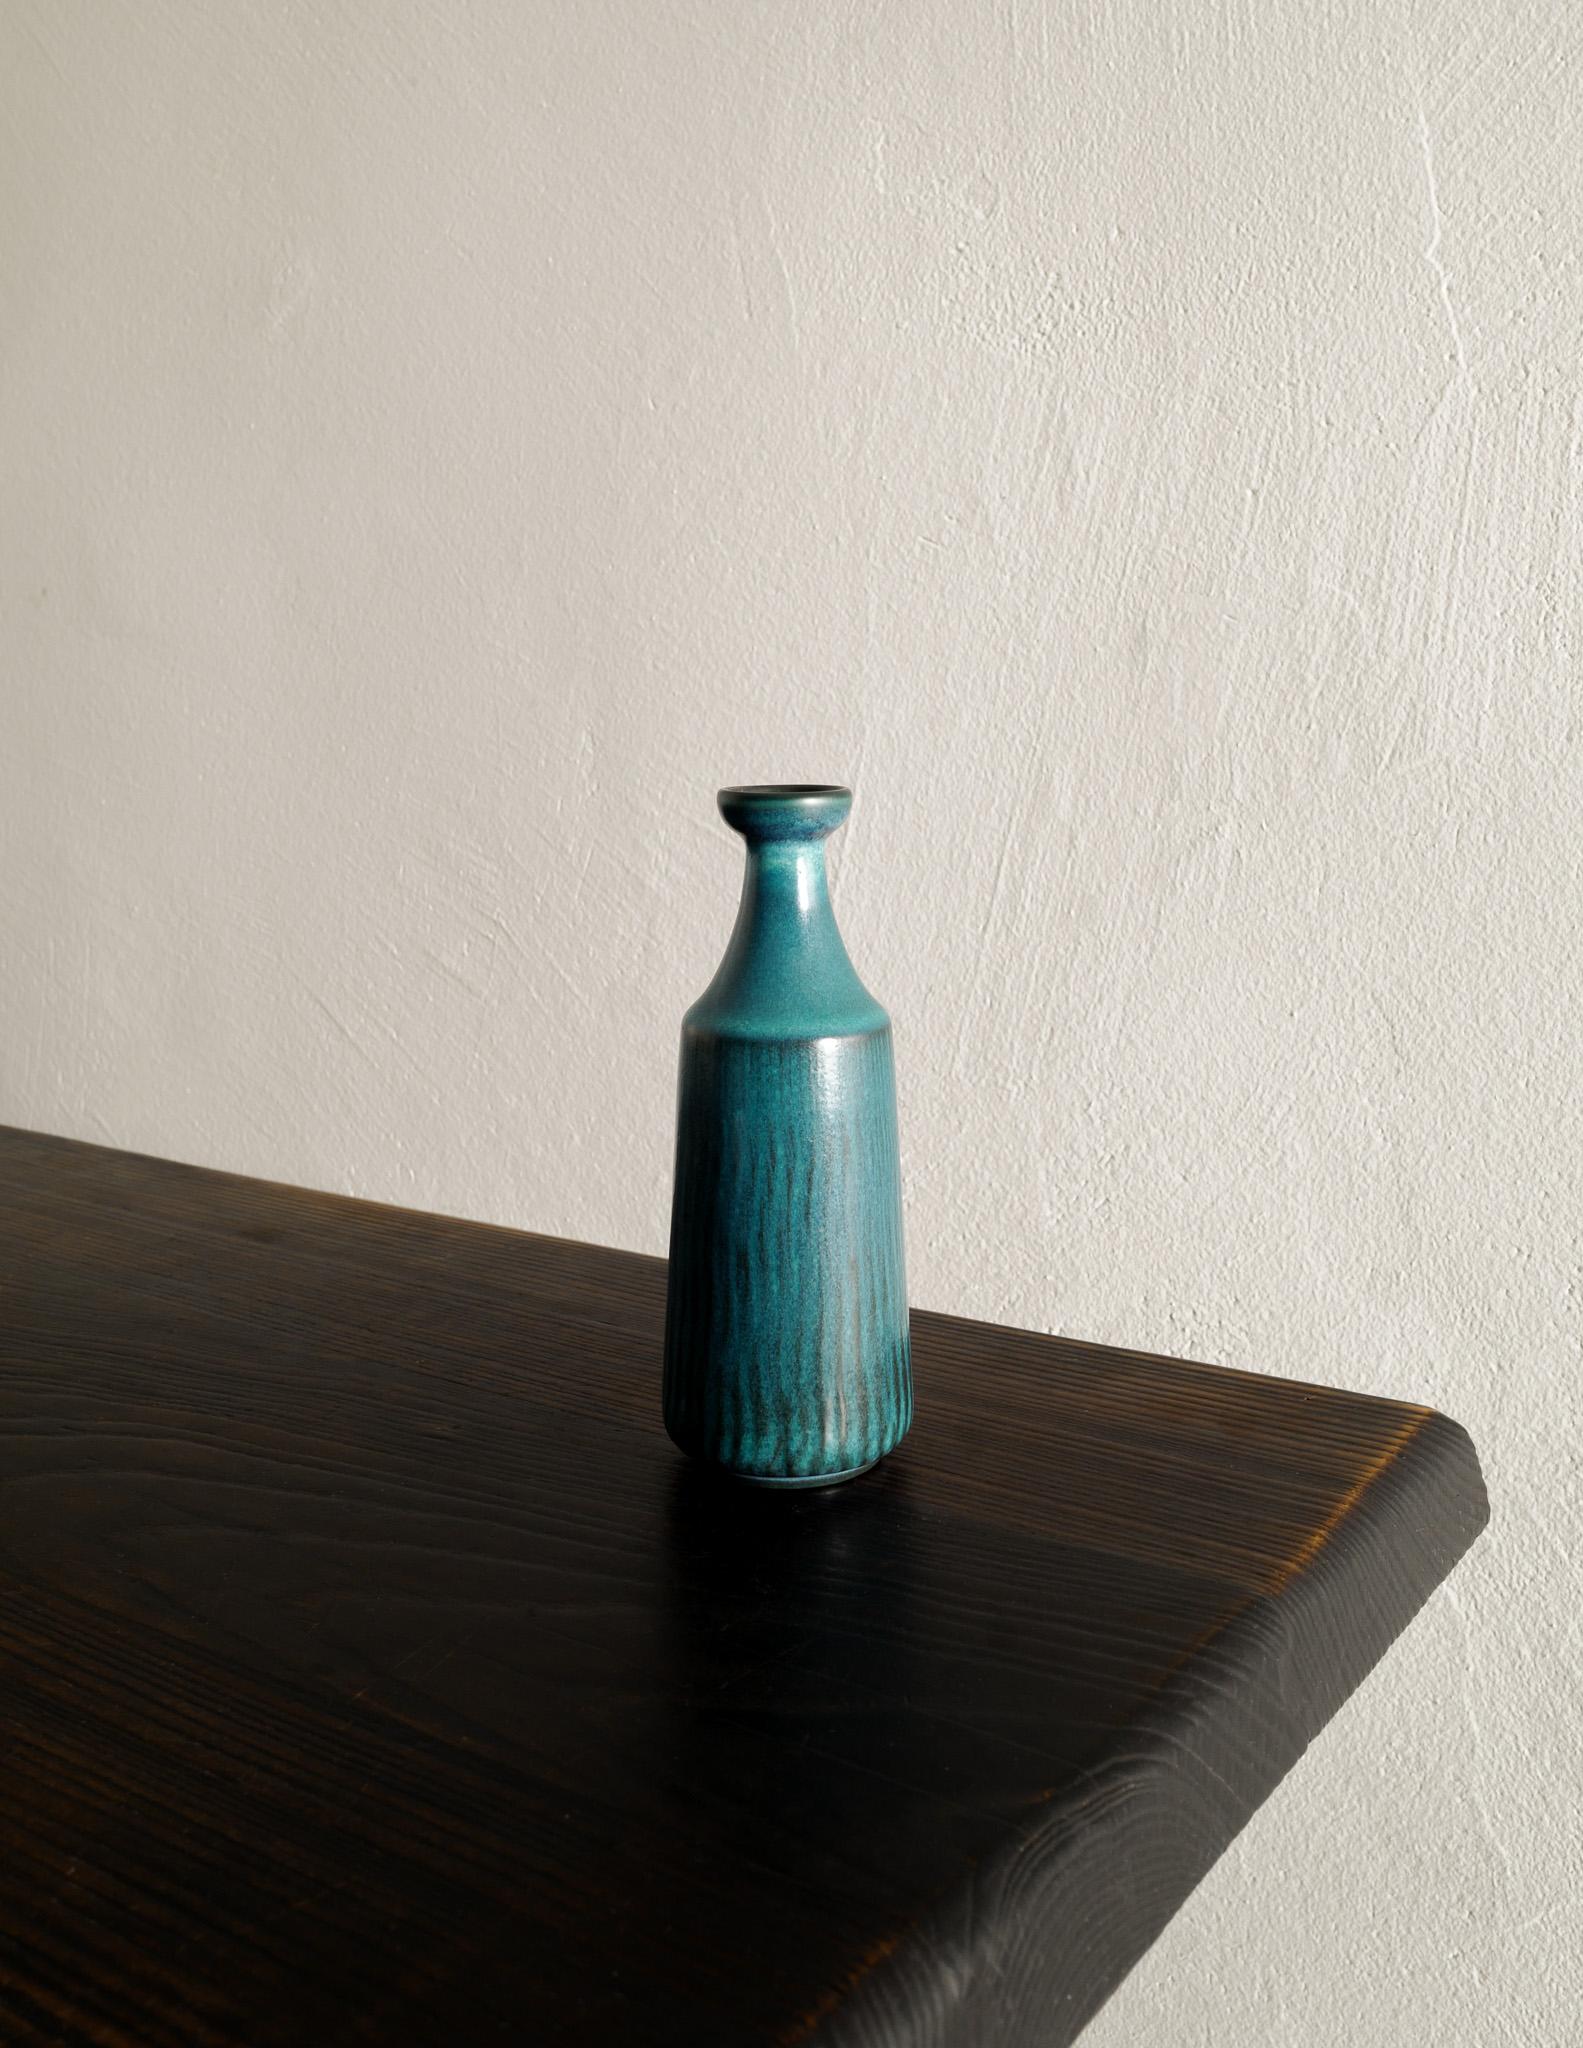 Seltene blau/türkise Vase aus der Mitte des Jahrhunderts, entworfen und hergestellt von Gunnar Nylund für Nymølle, Dänemark in den 1950er Jahren. In gutem Originalzustand mit minimalen Alters- und Gebrauchsspuren. Unten signiert und gestempelt